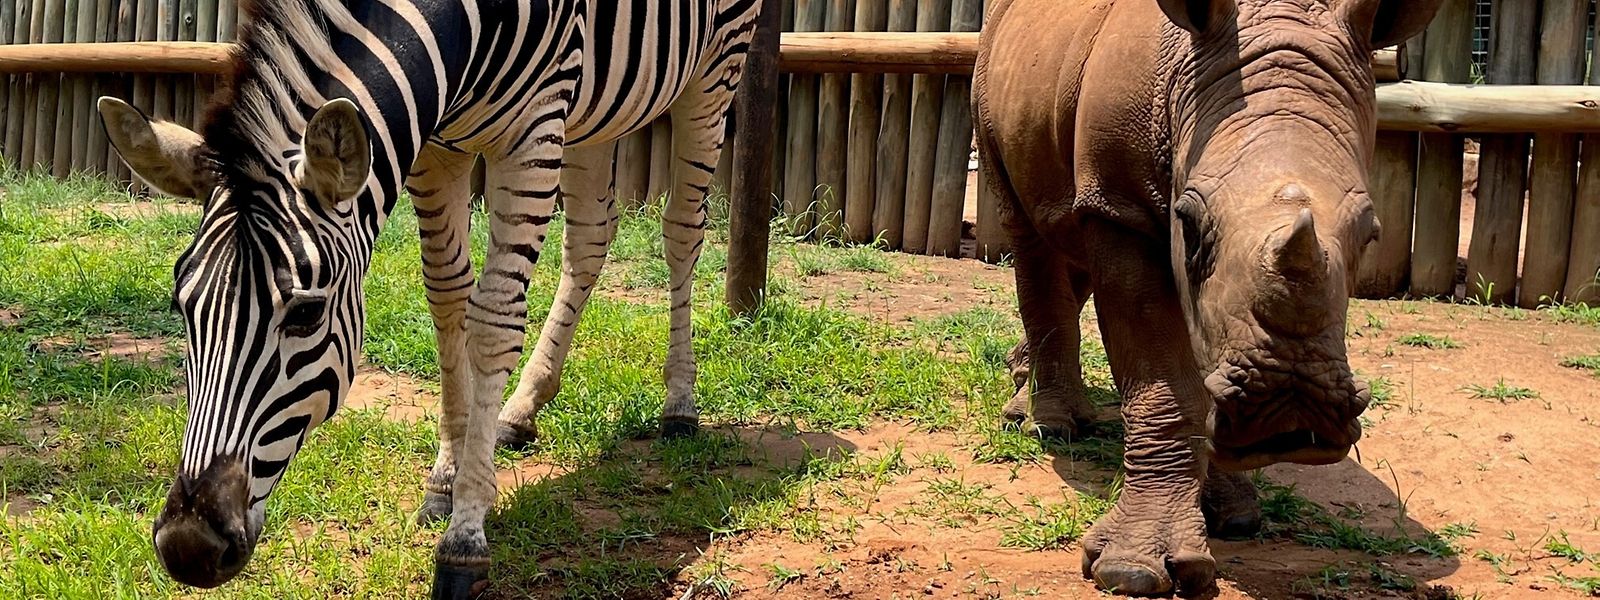 Nashorn-Baby Daisy und Zebra-Baby Modjadji auf ihrem täglichen Spaziergang durchs Gehege.